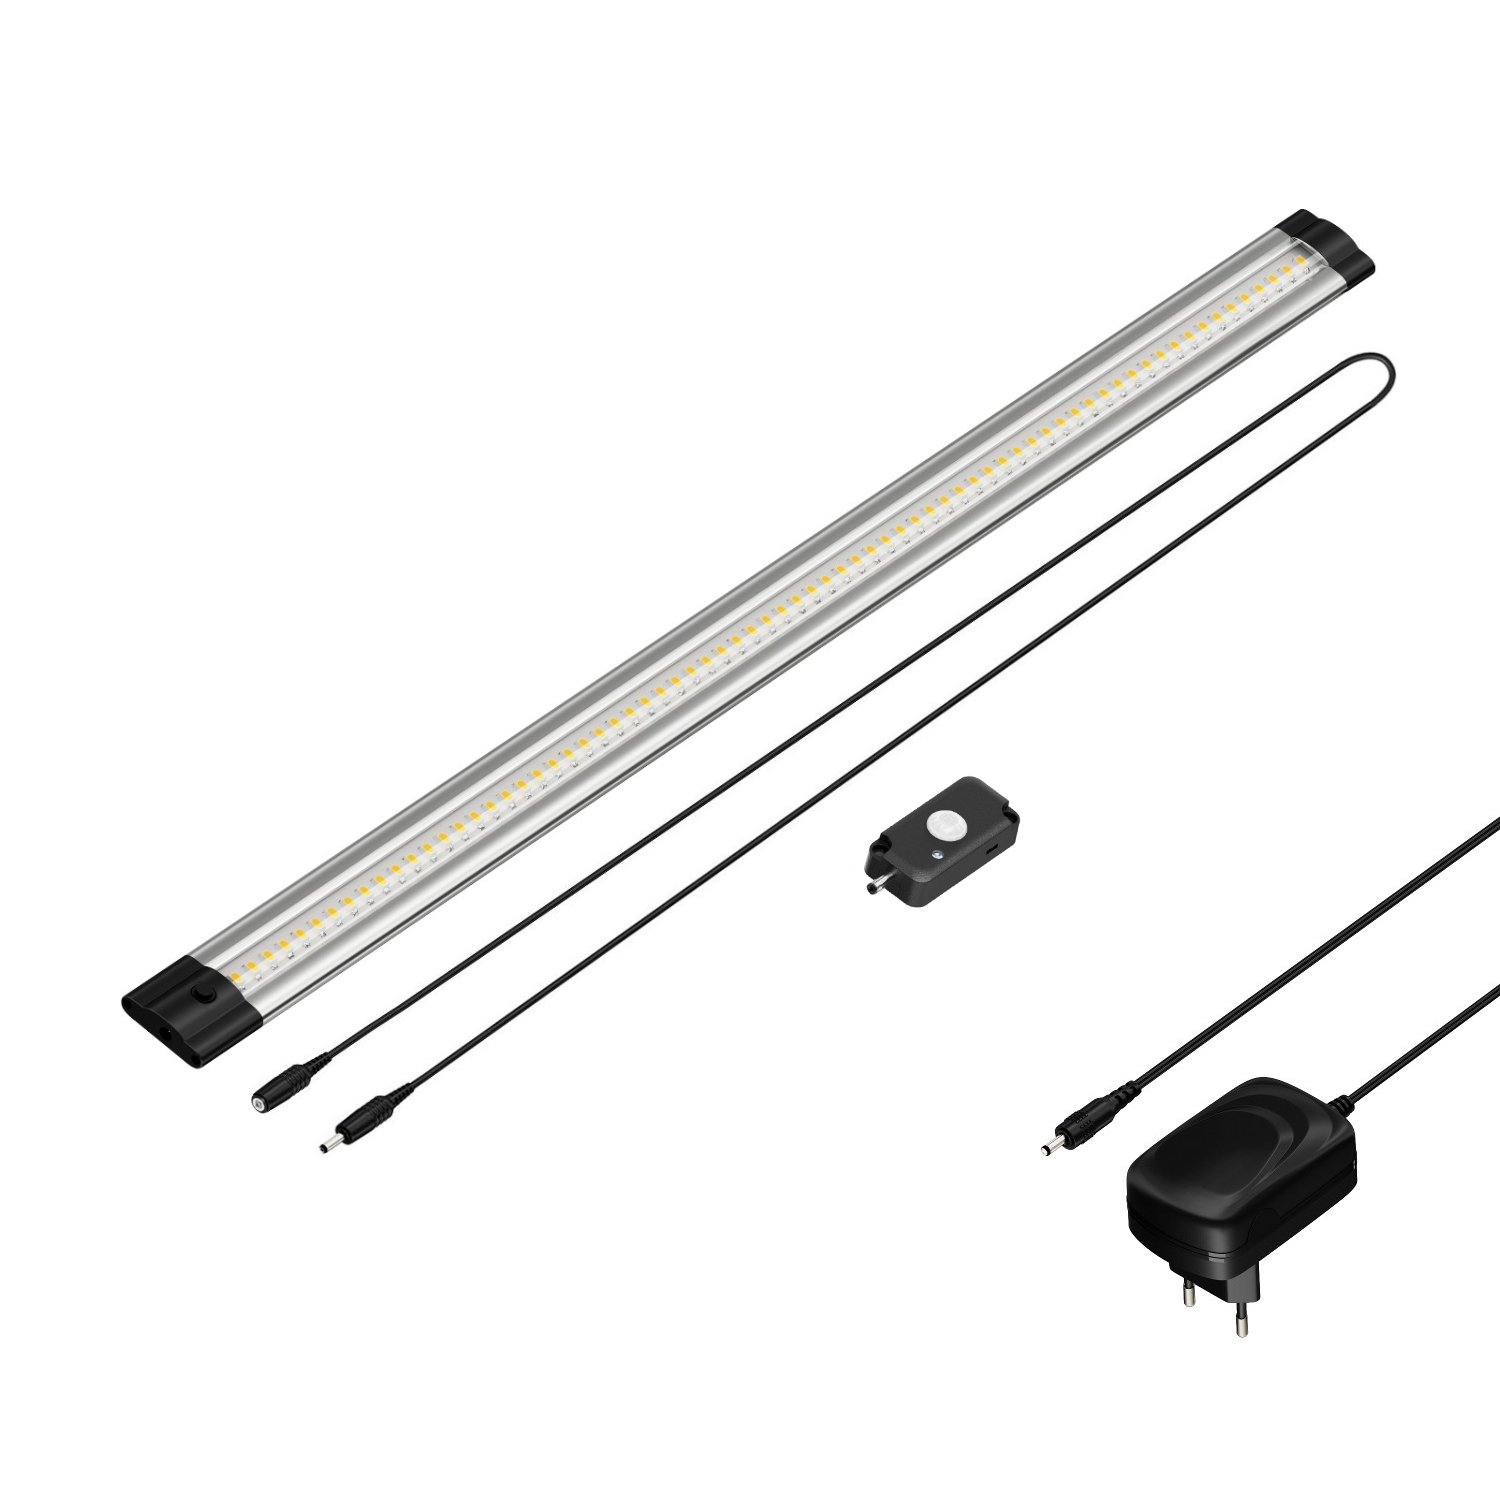 parlat LED Unterbau-Leuchte Siris mit Netzteil, Bewegungsmelder, flach, 50cm, 531lm, warm-weiß